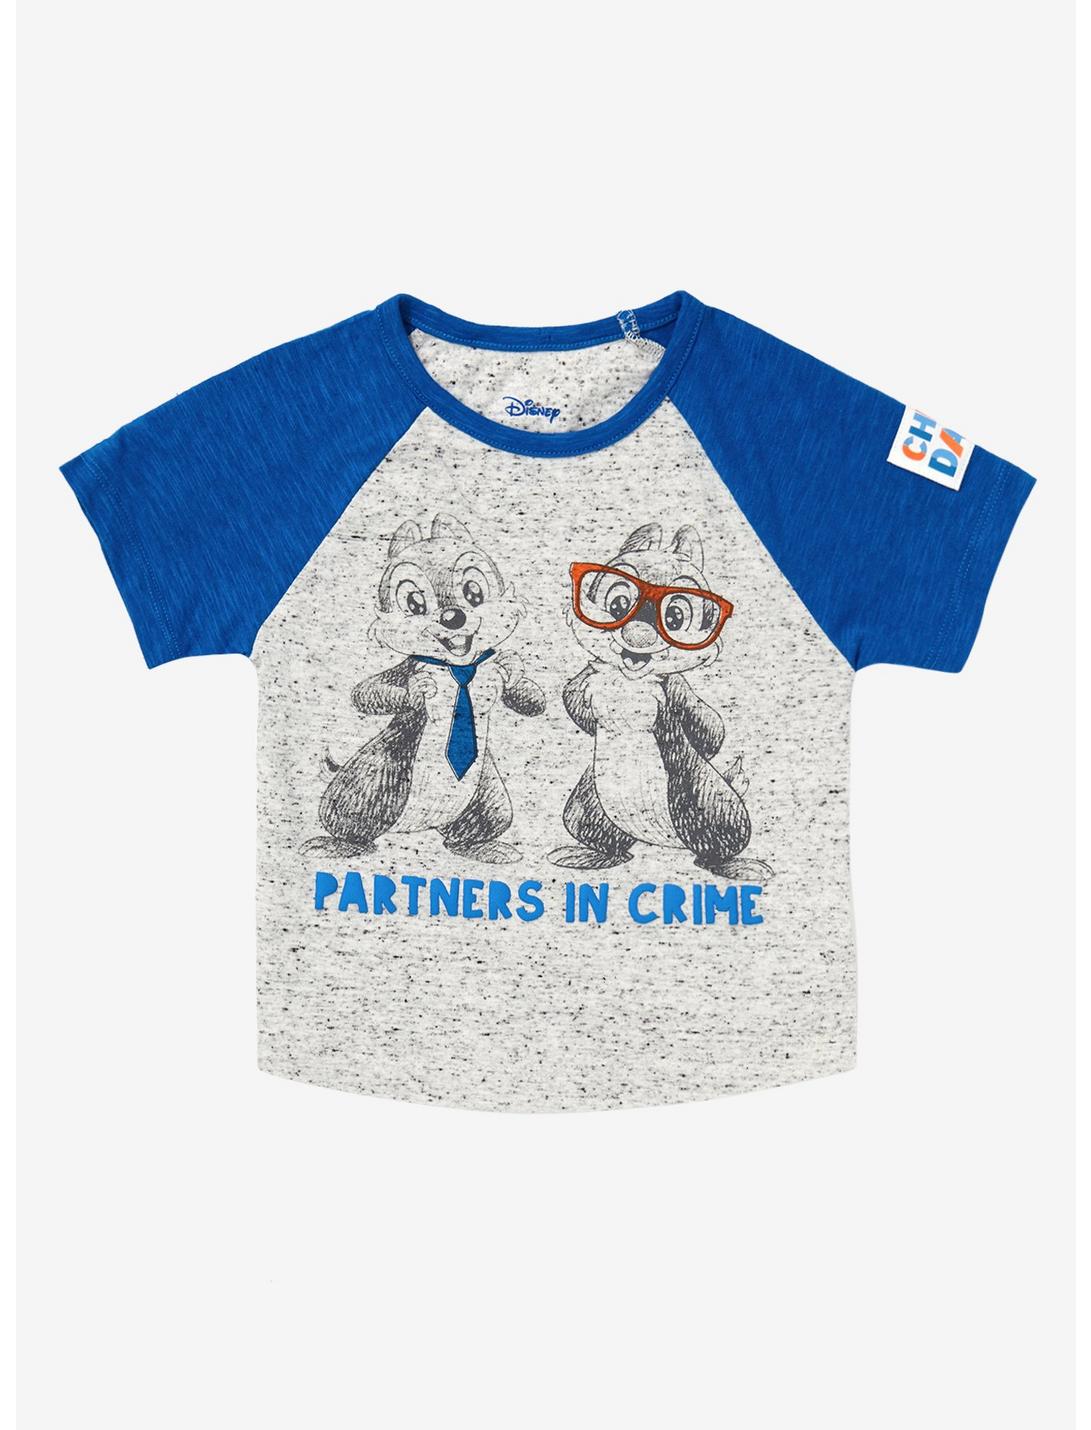 Disney Chip 'n Dale Partners in Crime Toddler Raglan T-Shirt, BLUE, hi-res